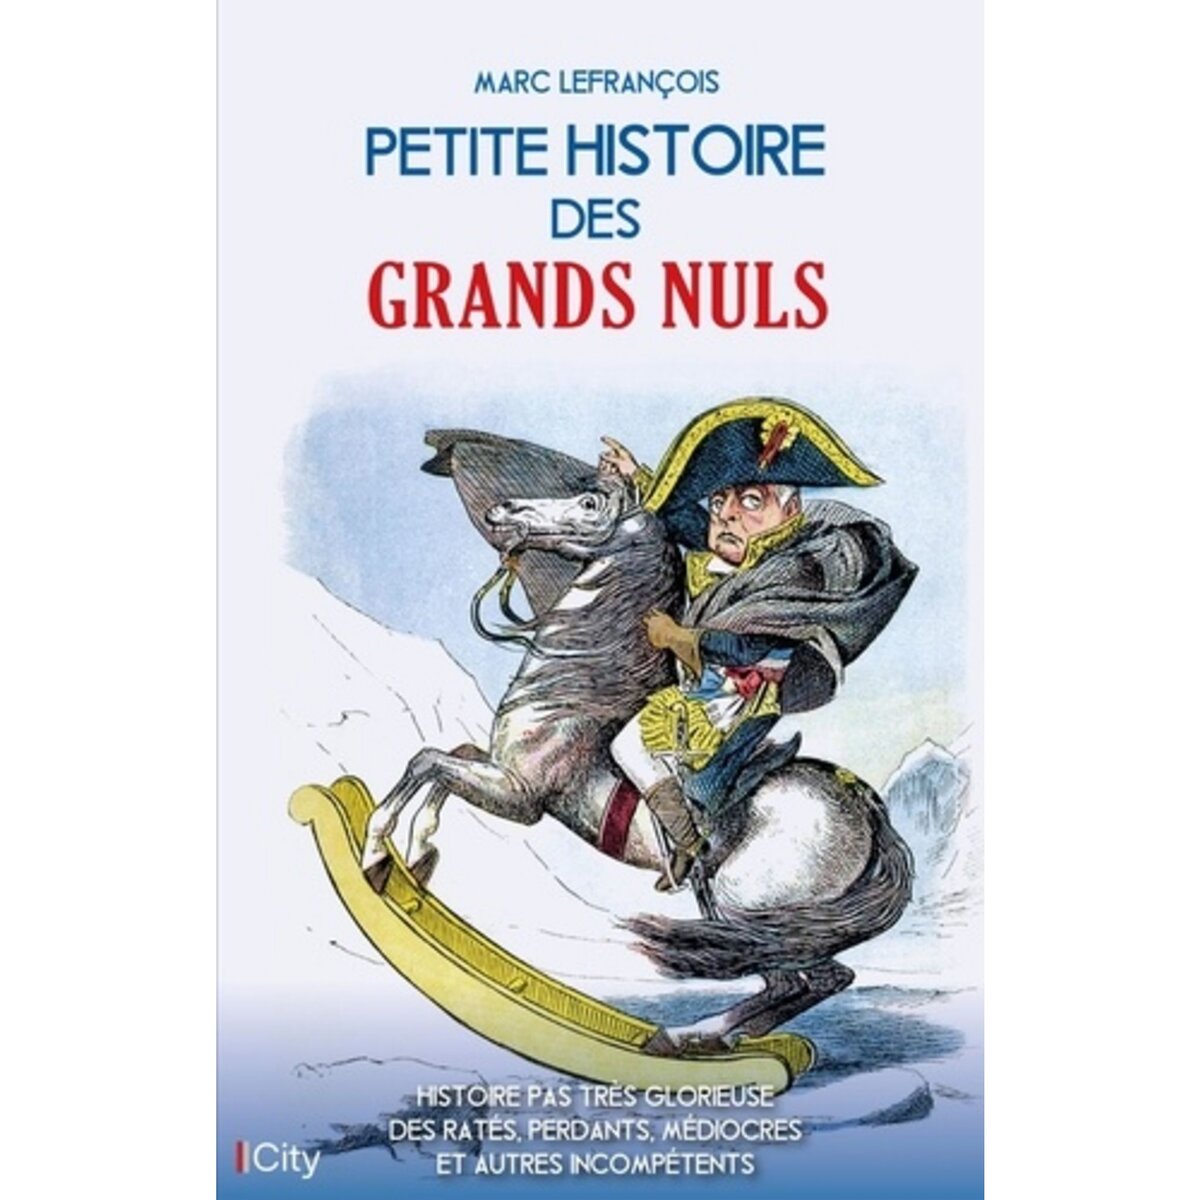  PETITE HISTOIRE DES GRANDS NULS, Lefrançois Marc